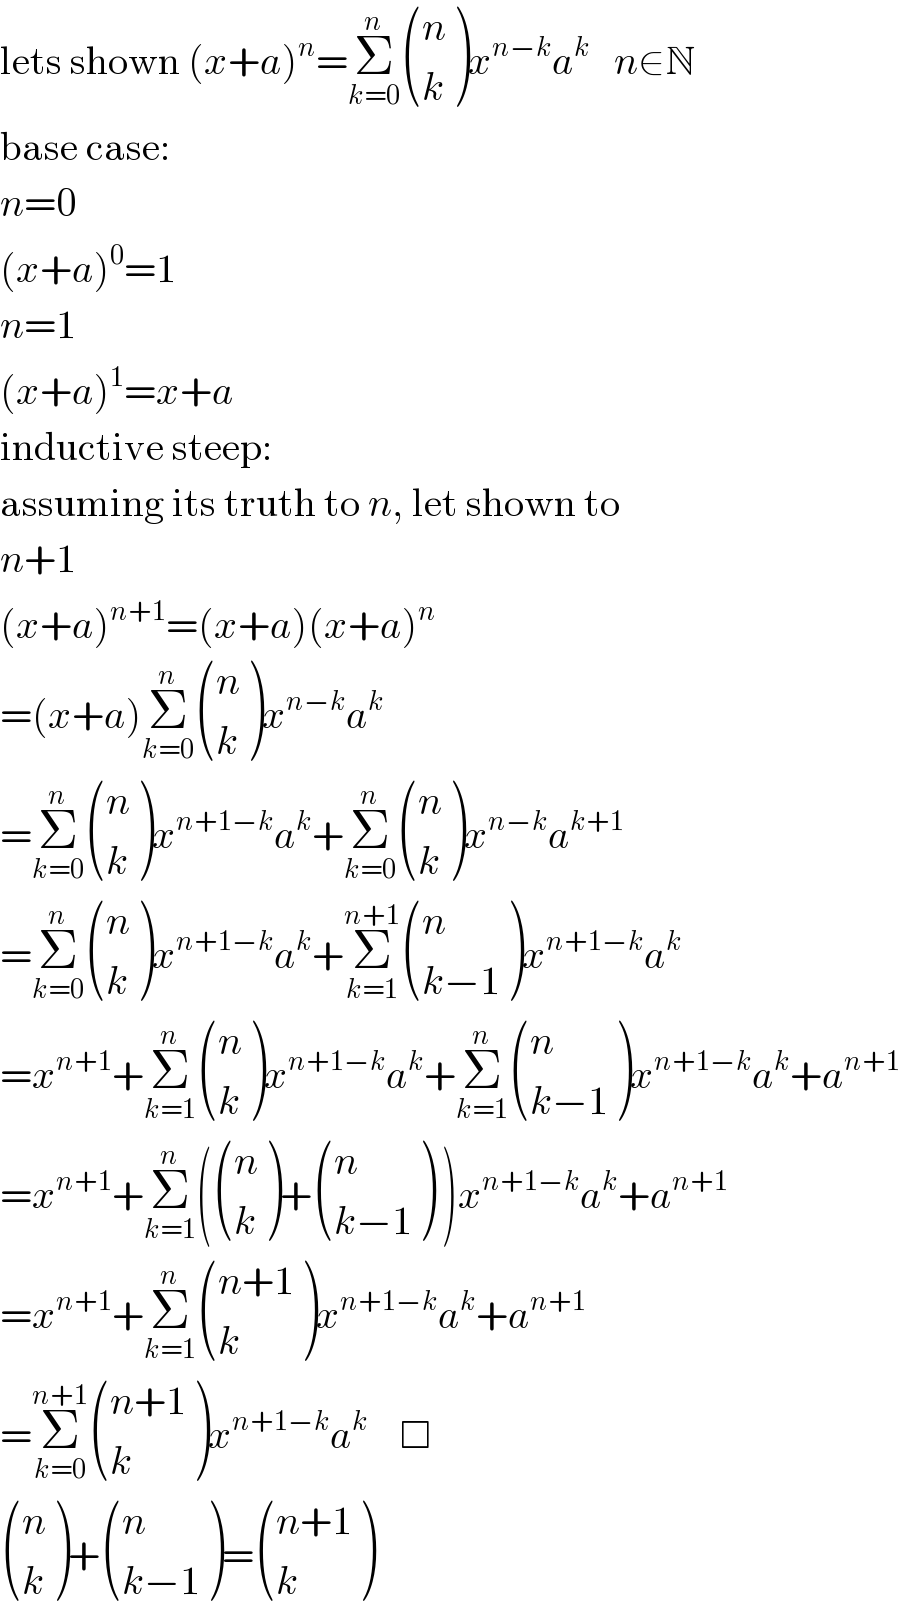 lets shown (x+a)^n =Σ_(k=0) ^n  ((n),(k) )x^(n−k) a^k    n∈N  base case:  n=0  (x+a)^0 =1  n=1  (x+a)^1 =x+a  inductive steep:  assuming its truth to n, let shown to  n+1  (x+a)^(n+1) =(x+a)(x+a)^n   =(x+a)Σ_(k=0) ^n  ((n),(k) )x^(n−k) a^k   =Σ_(k=0) ^n  ((n),(k) )x^(n+1−k) a^k +Σ_(k=0) ^n  ((n),(k) )x^(n−k) a^(k+1)   =Σ_(k=0) ^n  ((n),(k) )x^(n+1−k) a^k +Σ_(k=1) ^(n+1)  ((n),((k−1)) )x^(n+1−k) a^k   =x^(n+1) +Σ_(k=1) ^n  ((n),(k) )x^(n+1−k) a^k +Σ_(k=1) ^n  ((n),((k−1)) )x^(n+1−k) a^k +a^(n+1)   =x^(n+1) +Σ_(k=1) ^n ( ((n),(k) )+ ((n),((k−1)) ) )x^(n+1−k) a^k +a^(n+1)   =x^(n+1) +Σ_(k=1) ^n  (((n+1)),(k) )x^(n+1−k) a^k +a^(n+1)   =Σ_(k=0) ^(n+1)  (((n+1)),(k) )x^(n+1−k) a^k     □   ((n),(k) )+ ((n),((k−1)) )= (((n+1)),(k) )  